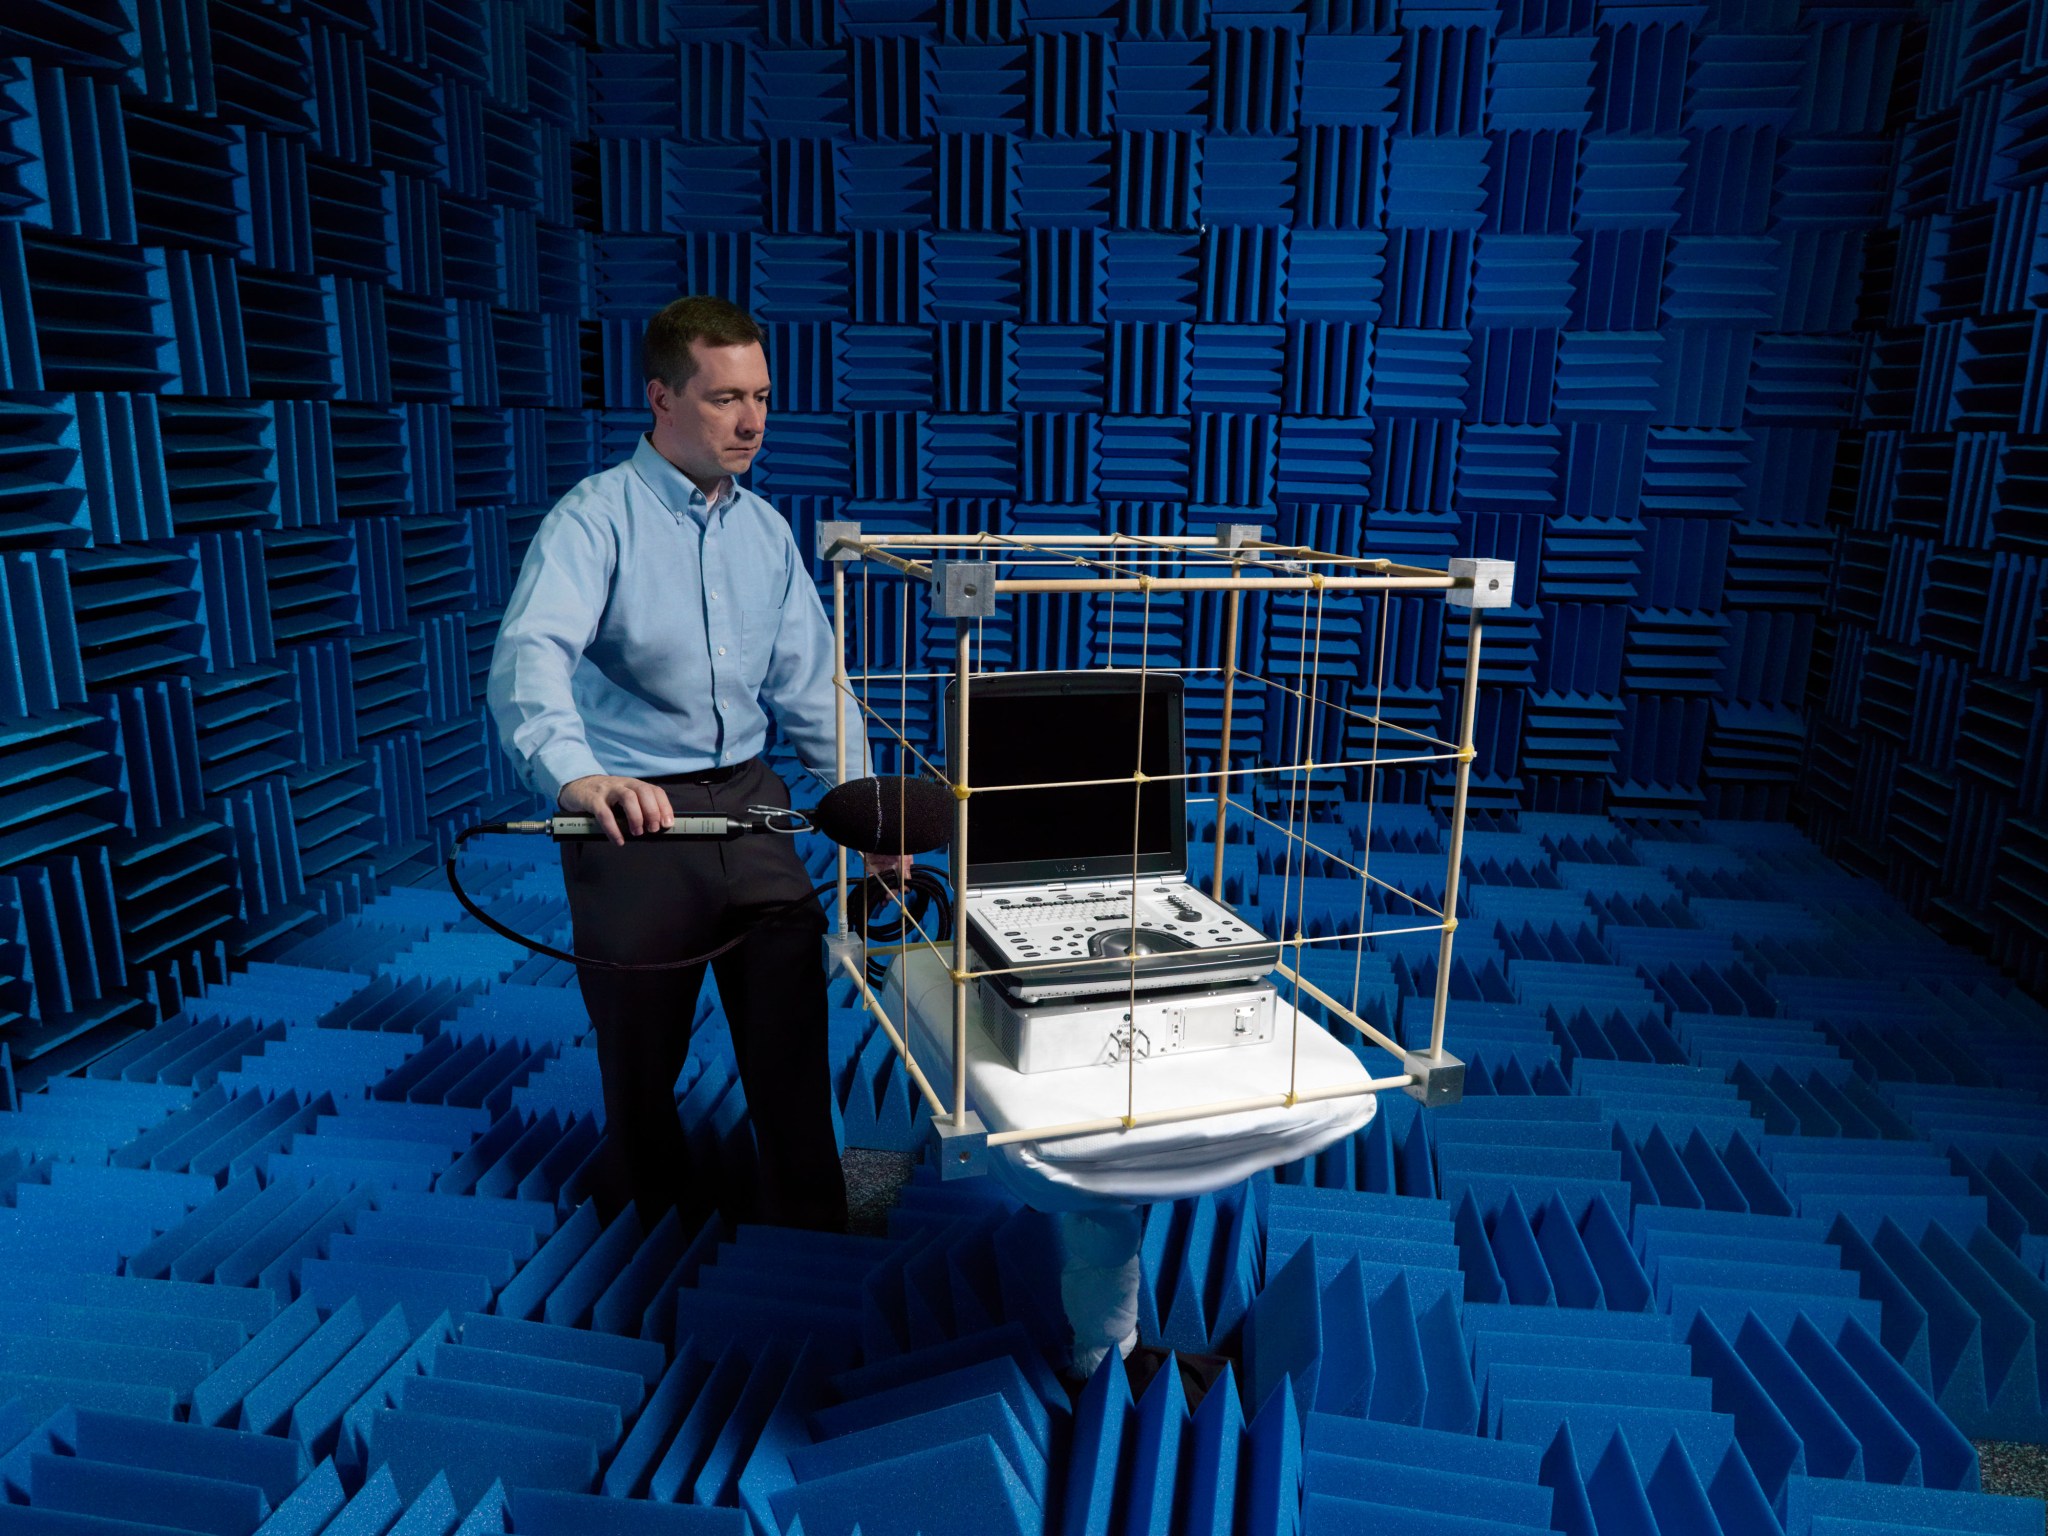 acoustics testing at NASA